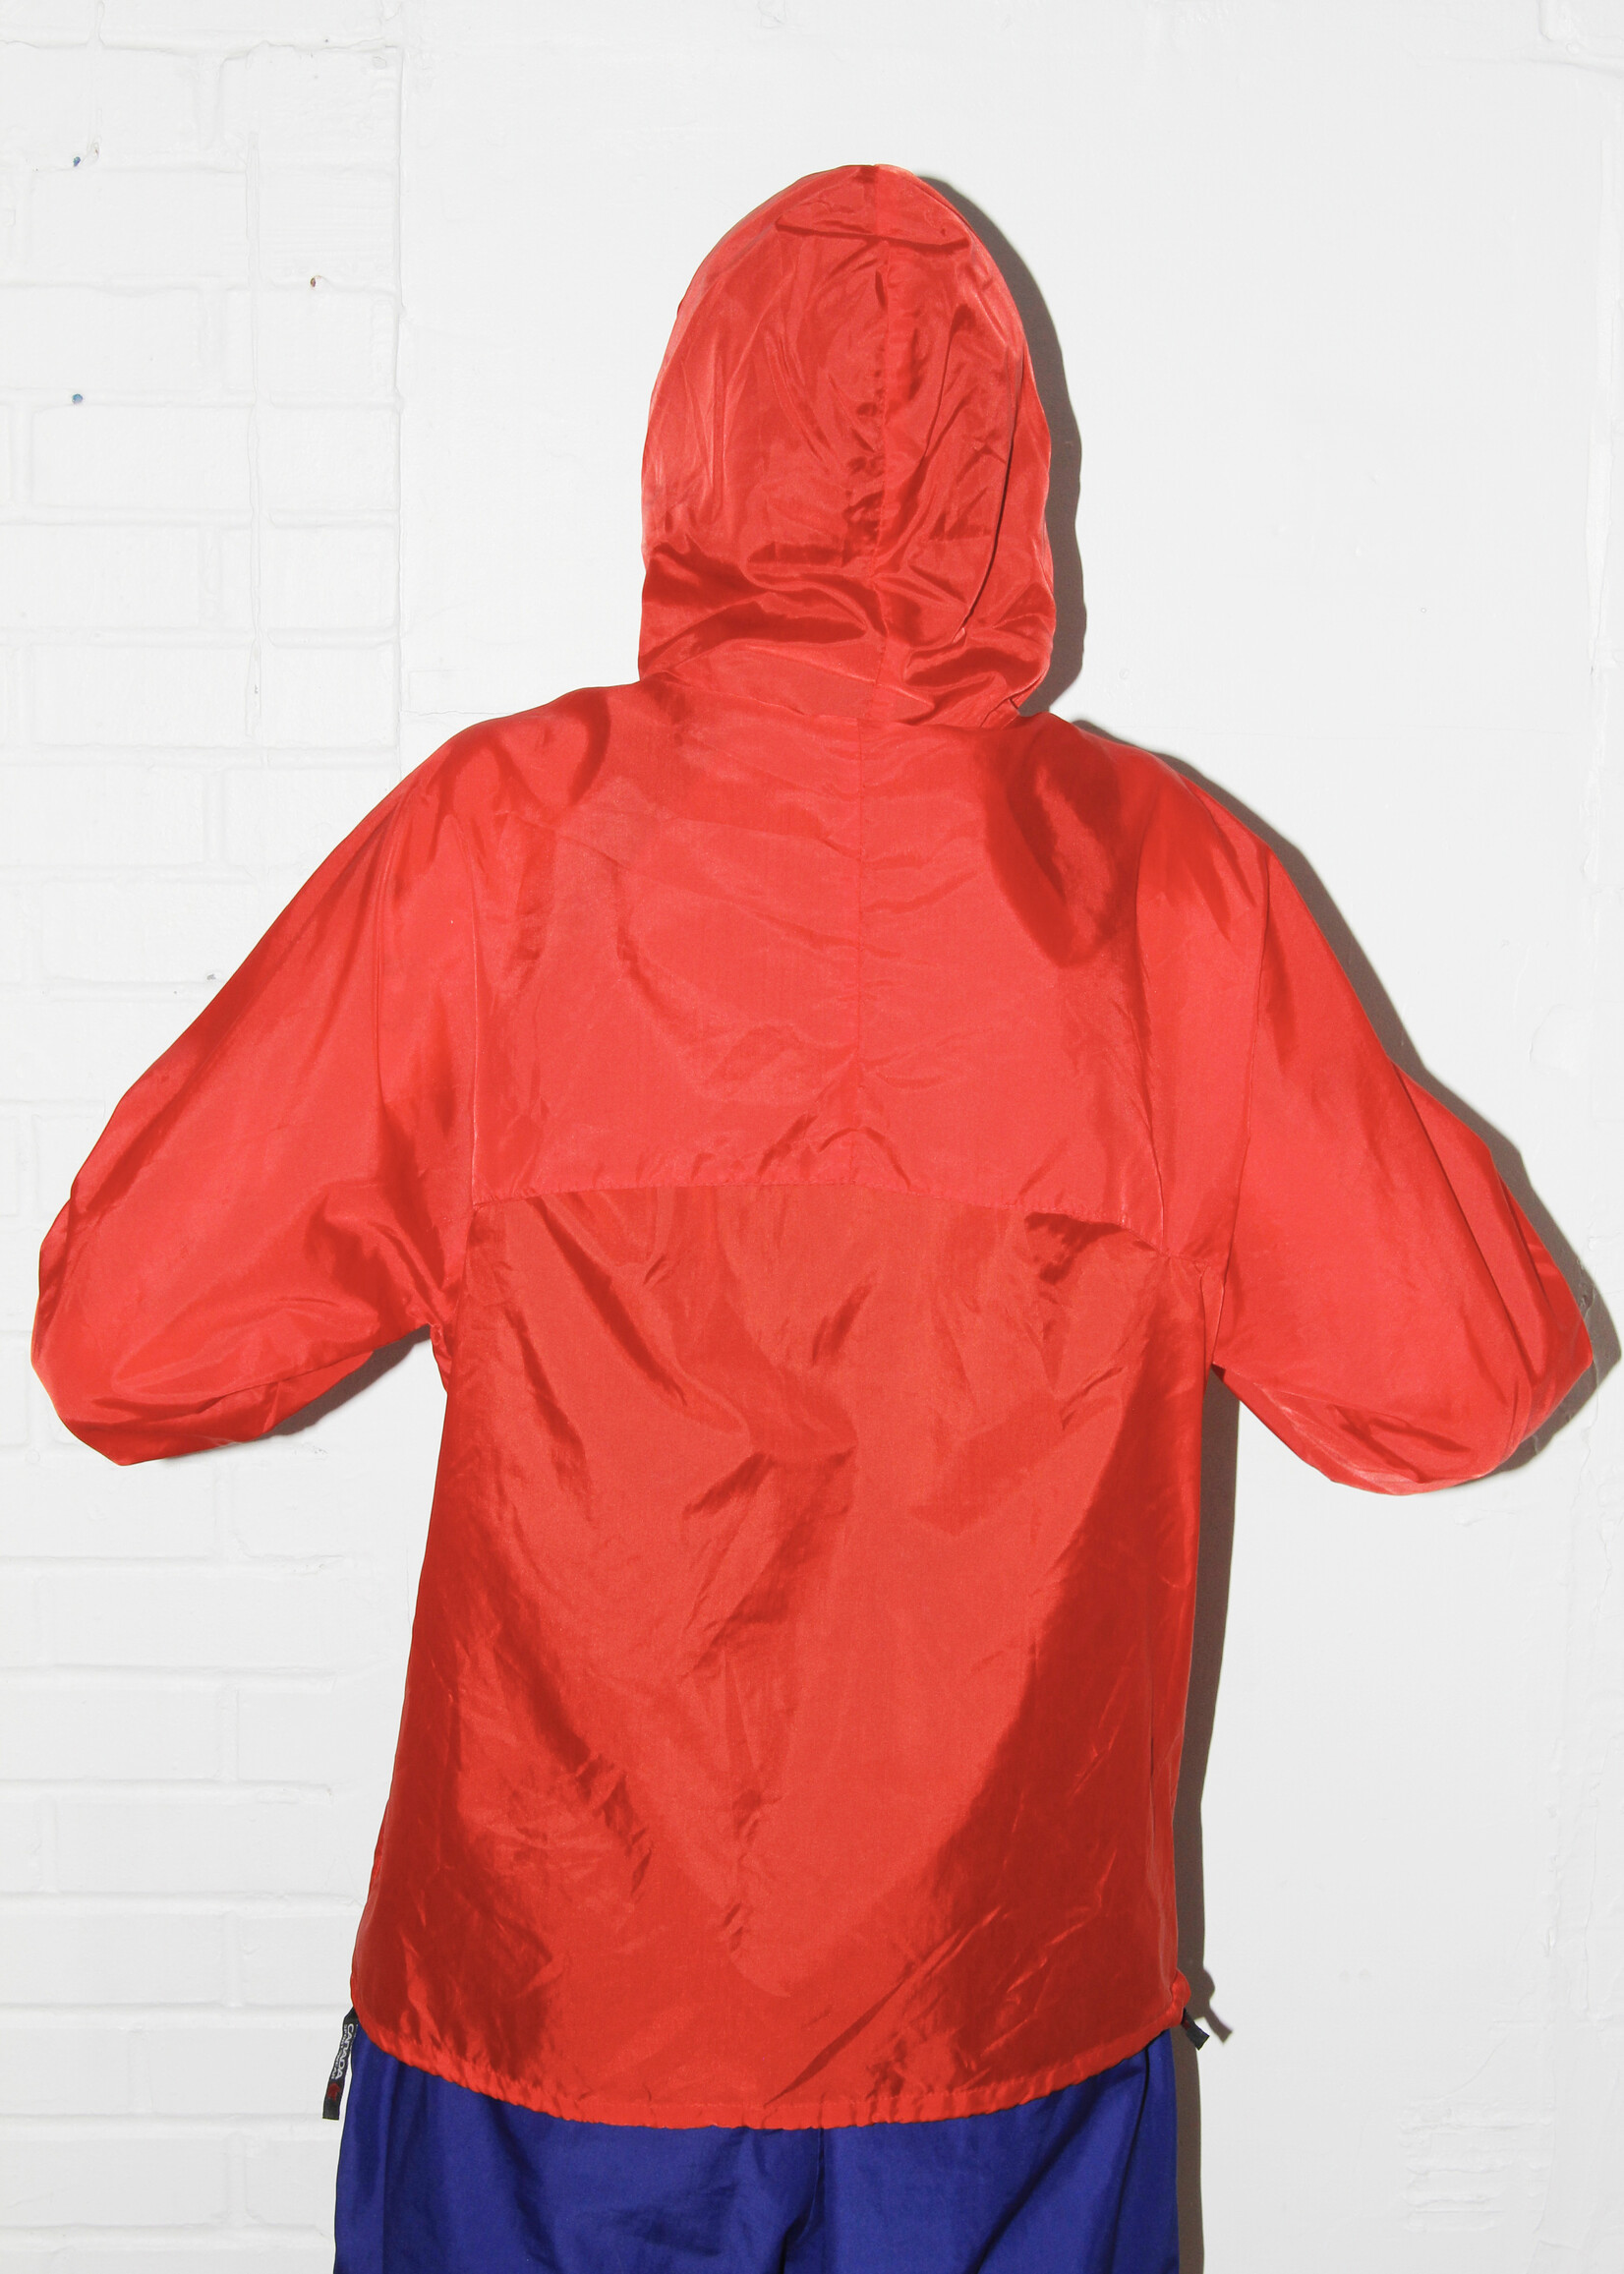 Vintage Vintage Red Rain Jacket - M